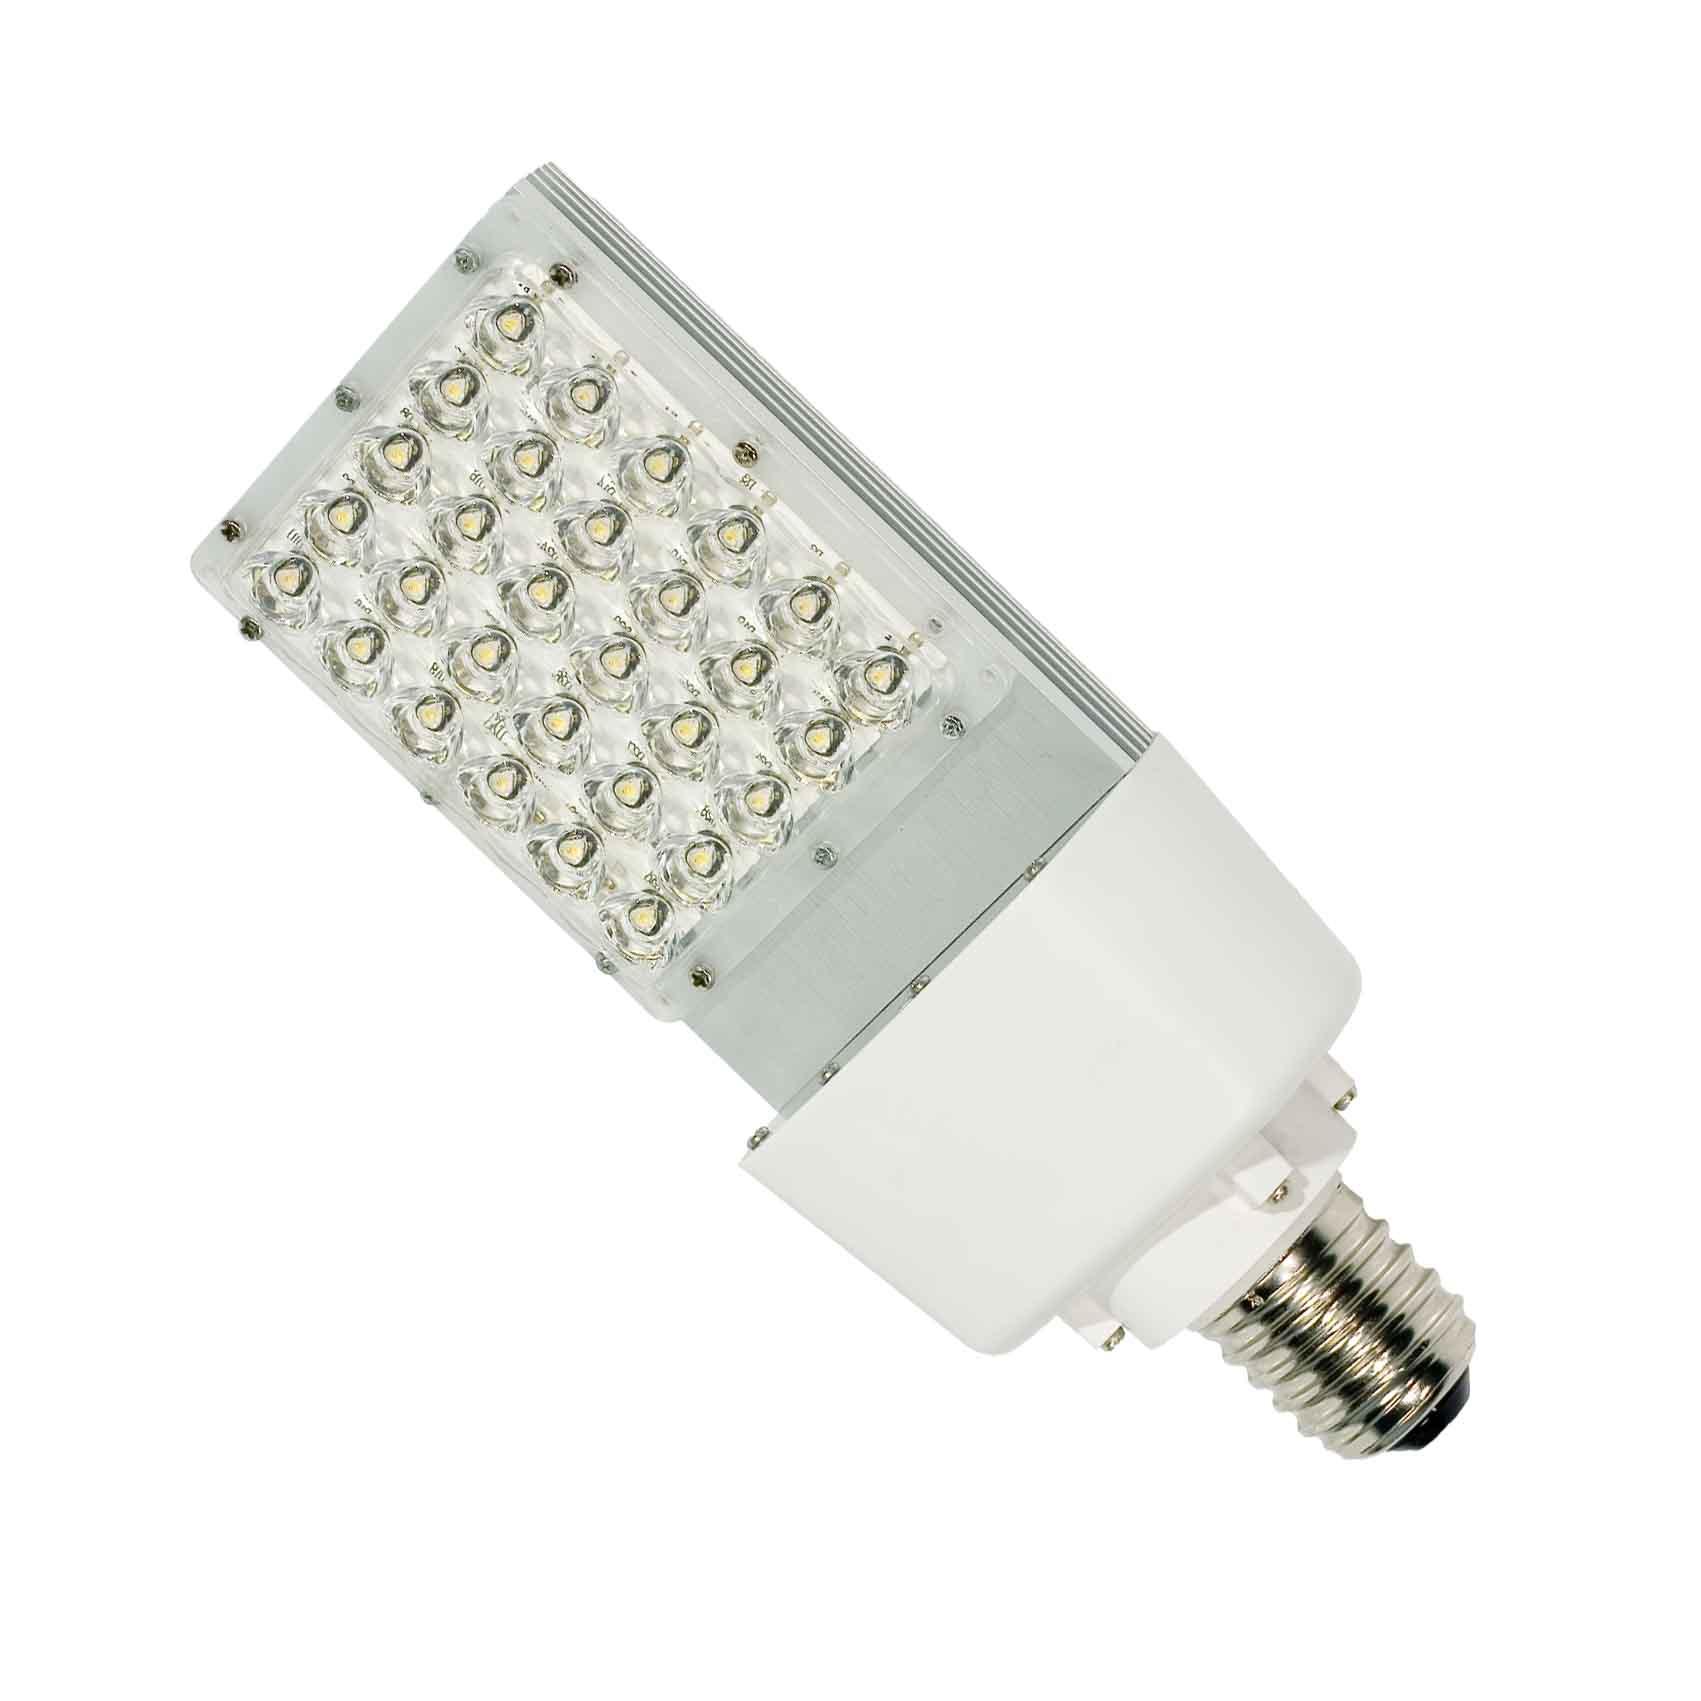 Oprawa LED SPL-30 W możliwa do zastosowania w tradycyjnej oprawie, zastępuje lampę sodową do  70